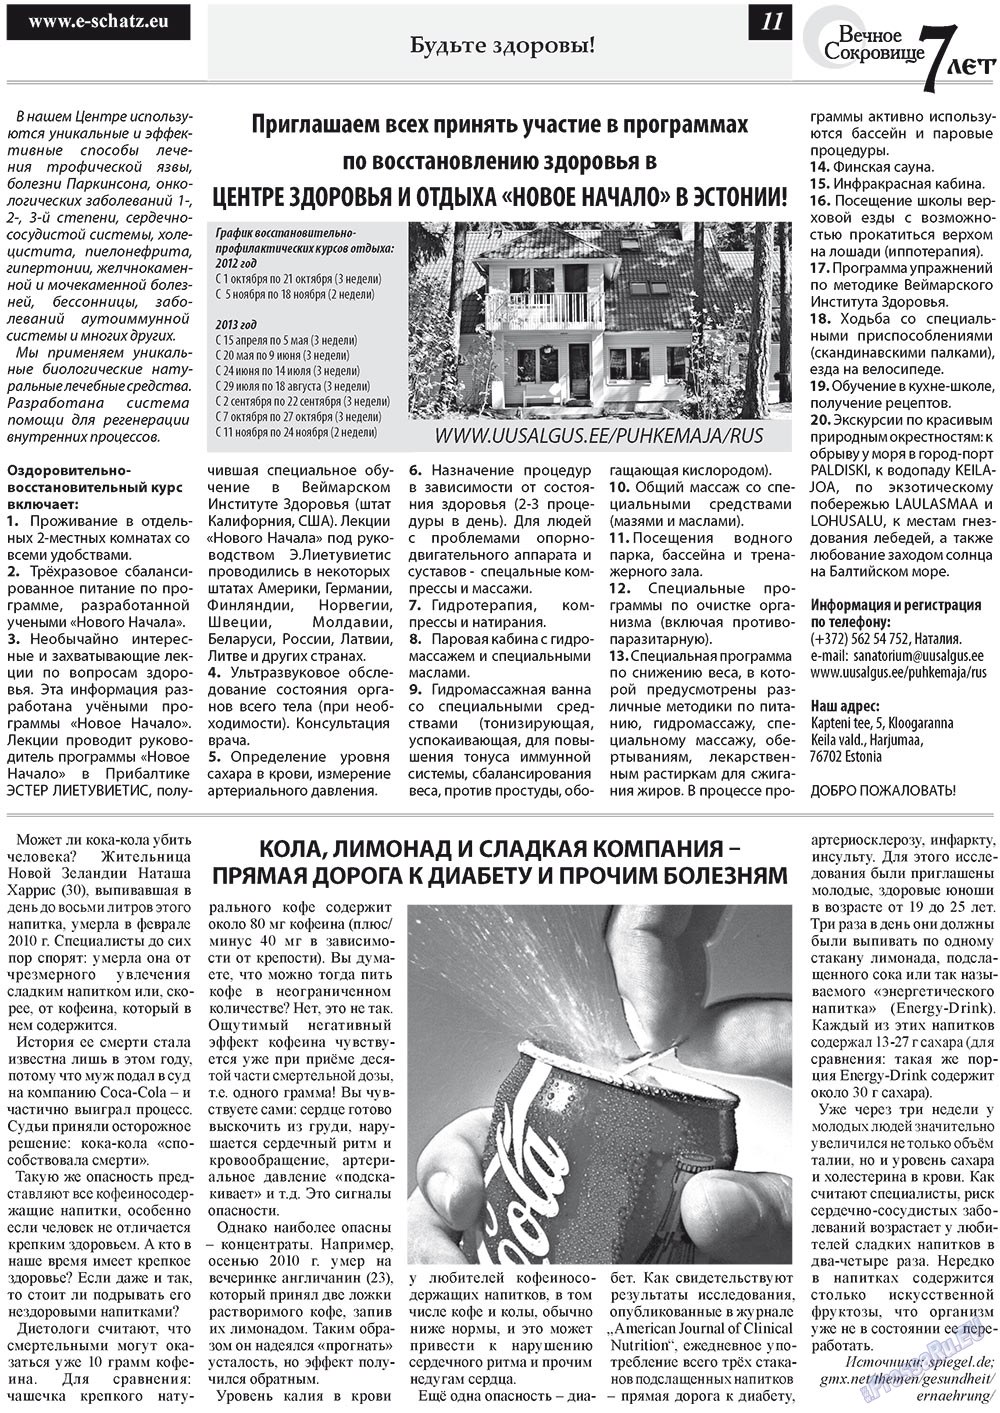 Вечное сокровище, газета. 2012 №5 стр.11